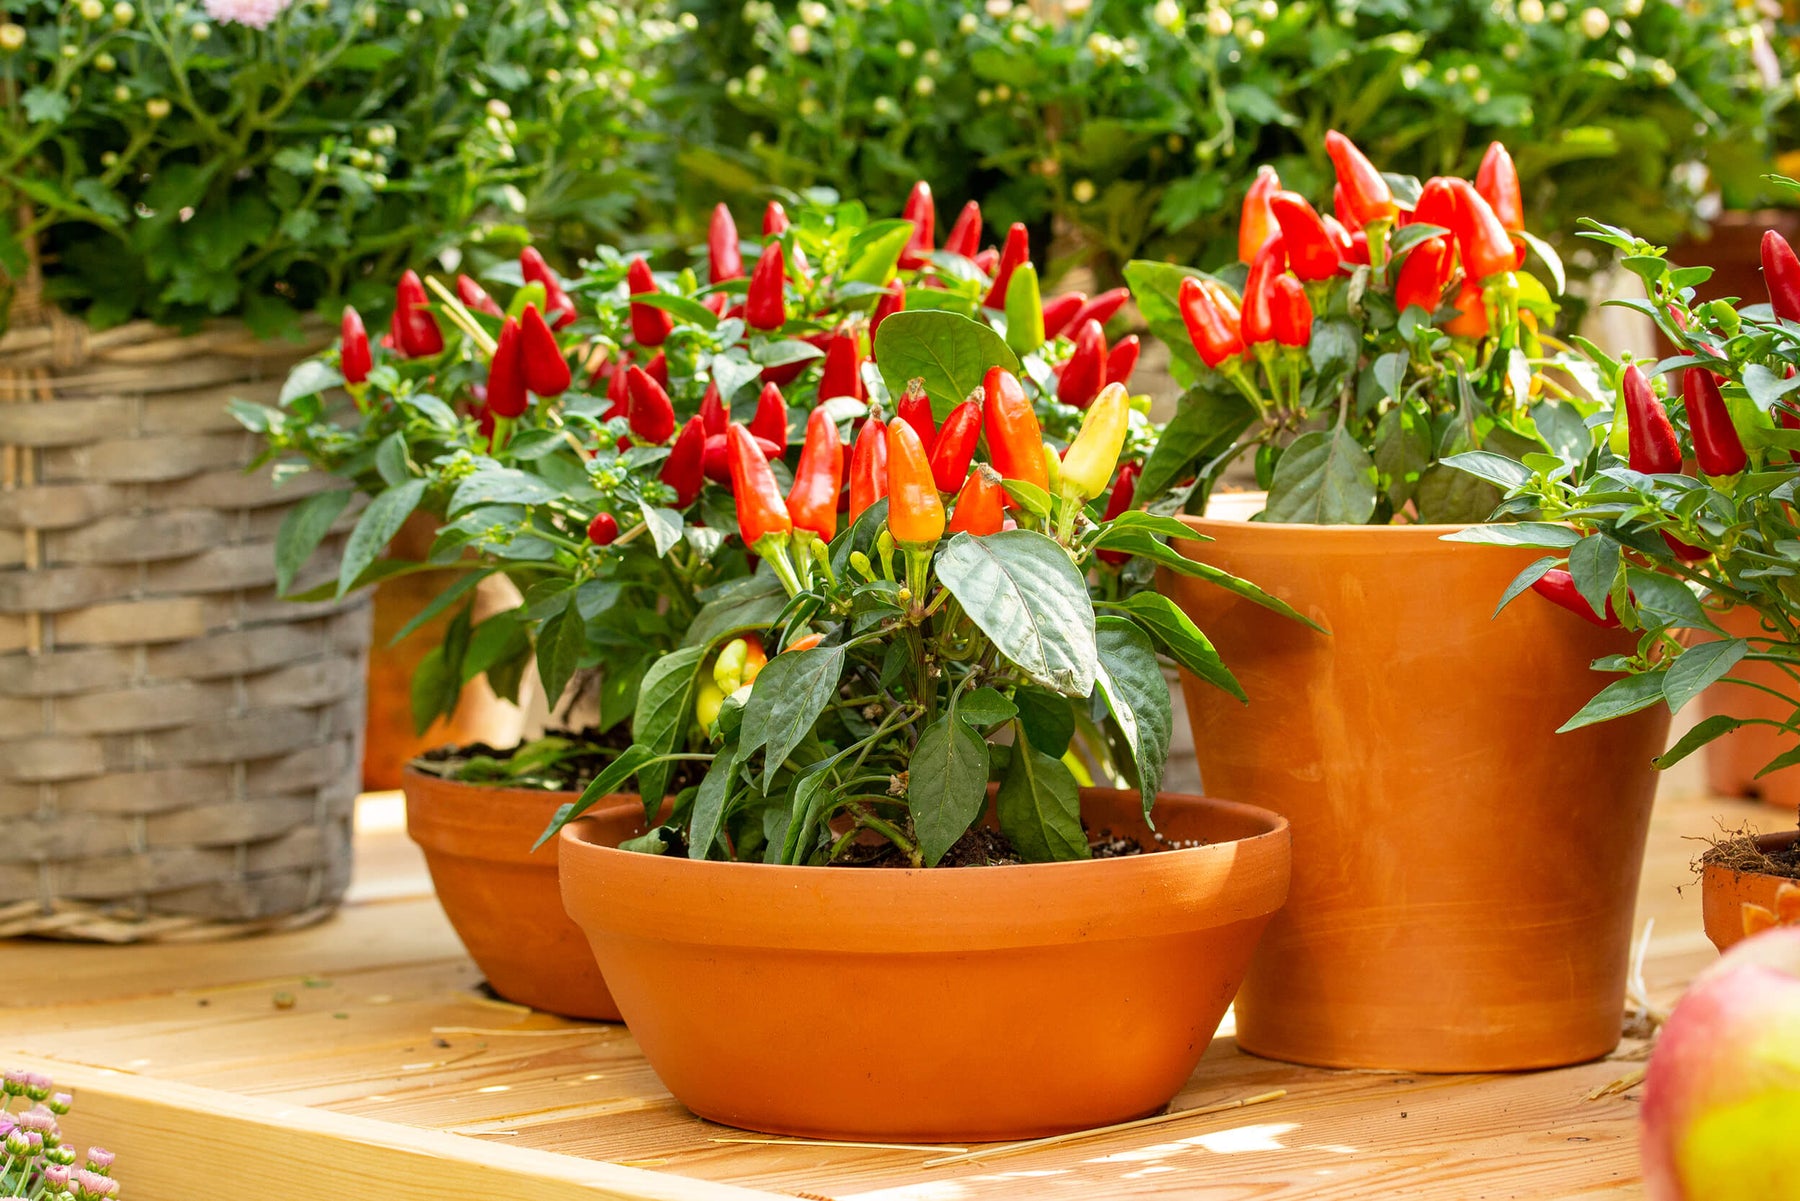 Plant a Hot Pepper Garden